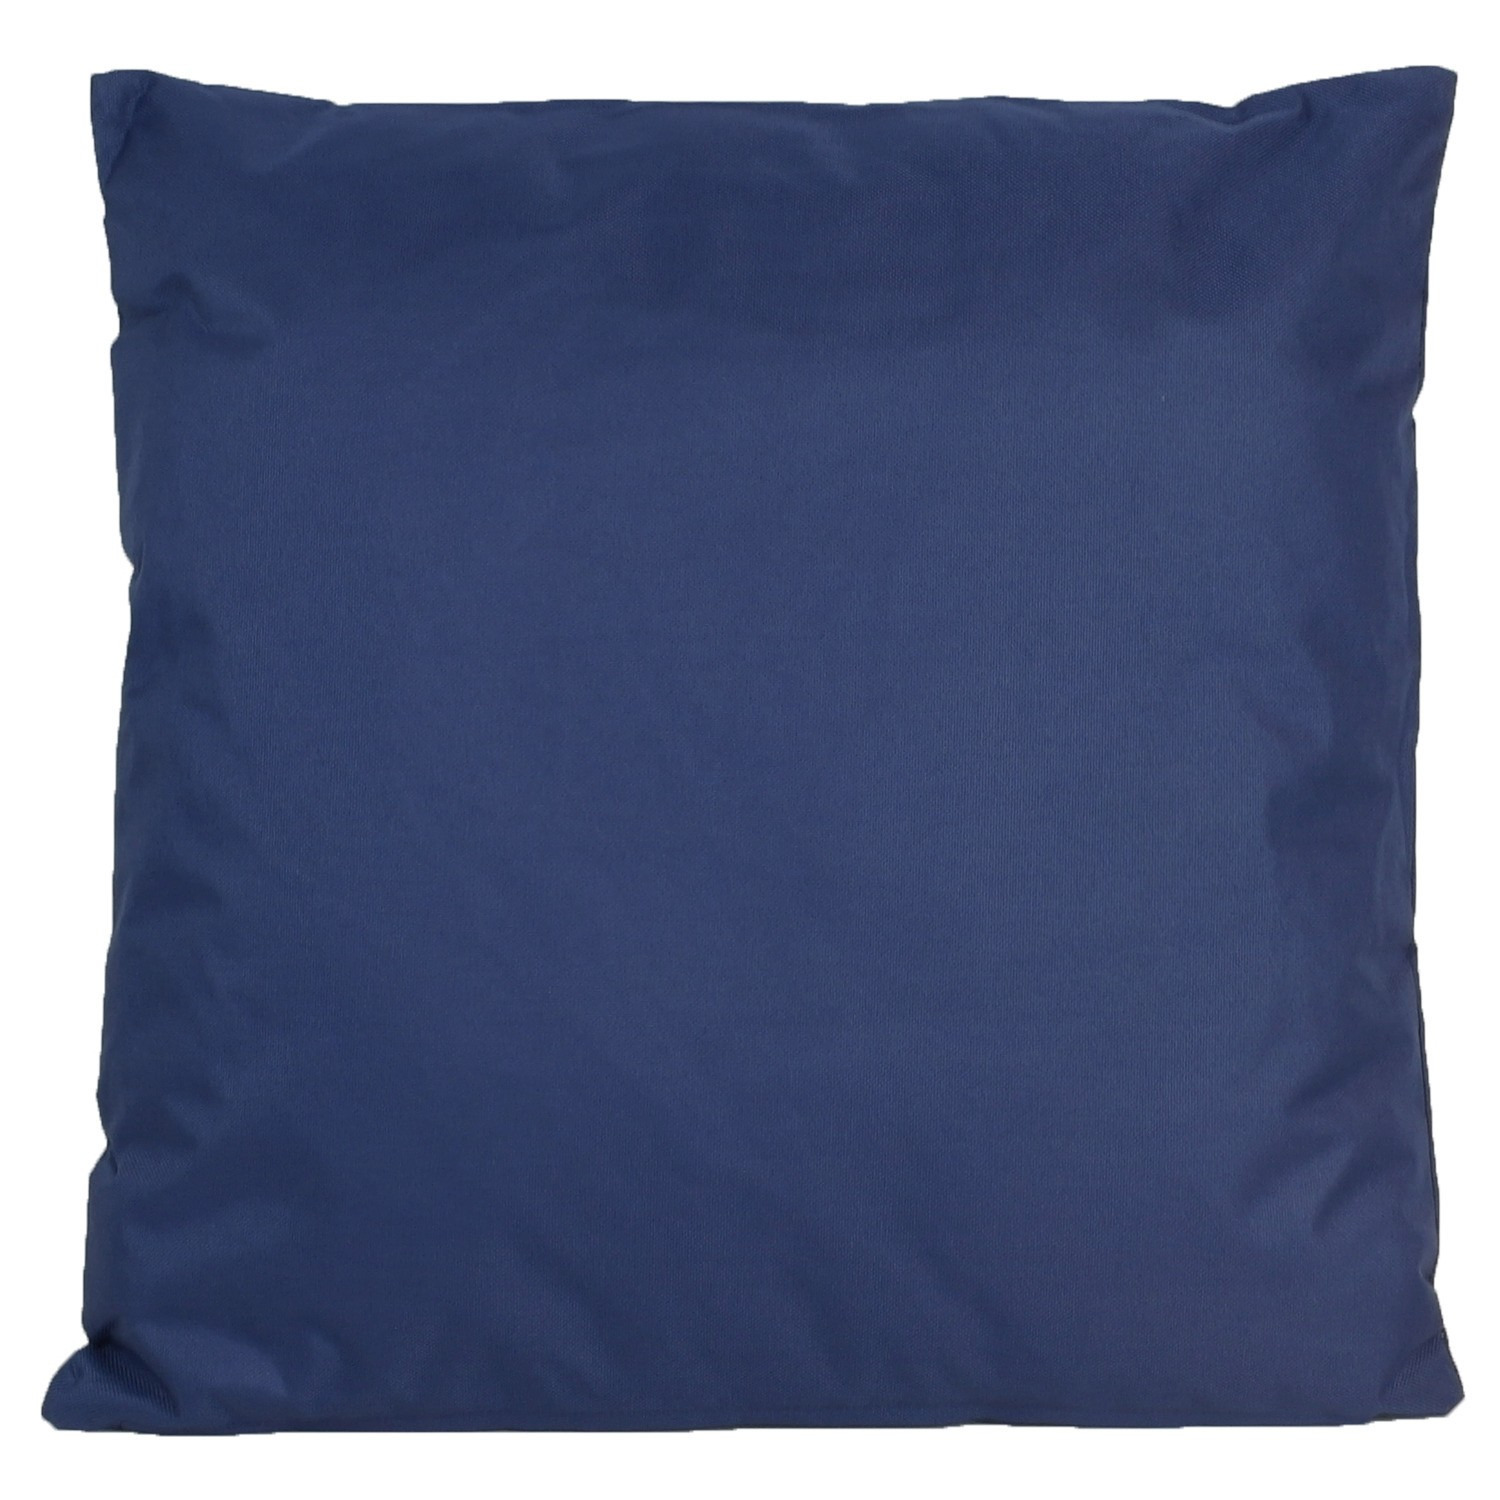 1x Bank-Sier kussens voor binnen en buiten in de kleur donkerblauw 45 x 45 cm